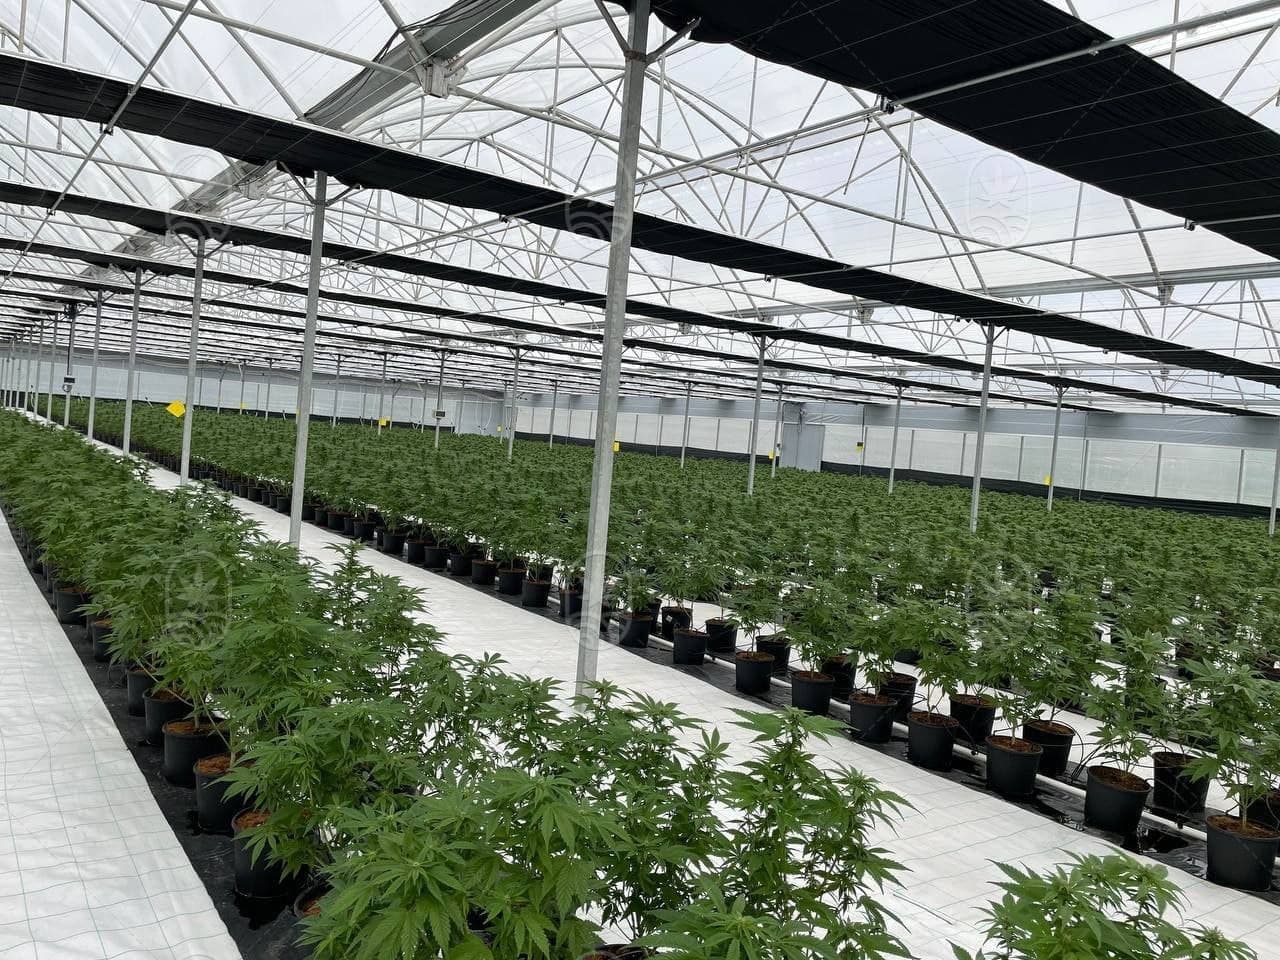 JuicyFields - Votre plante de cannabis pourrait aussi pousser ici